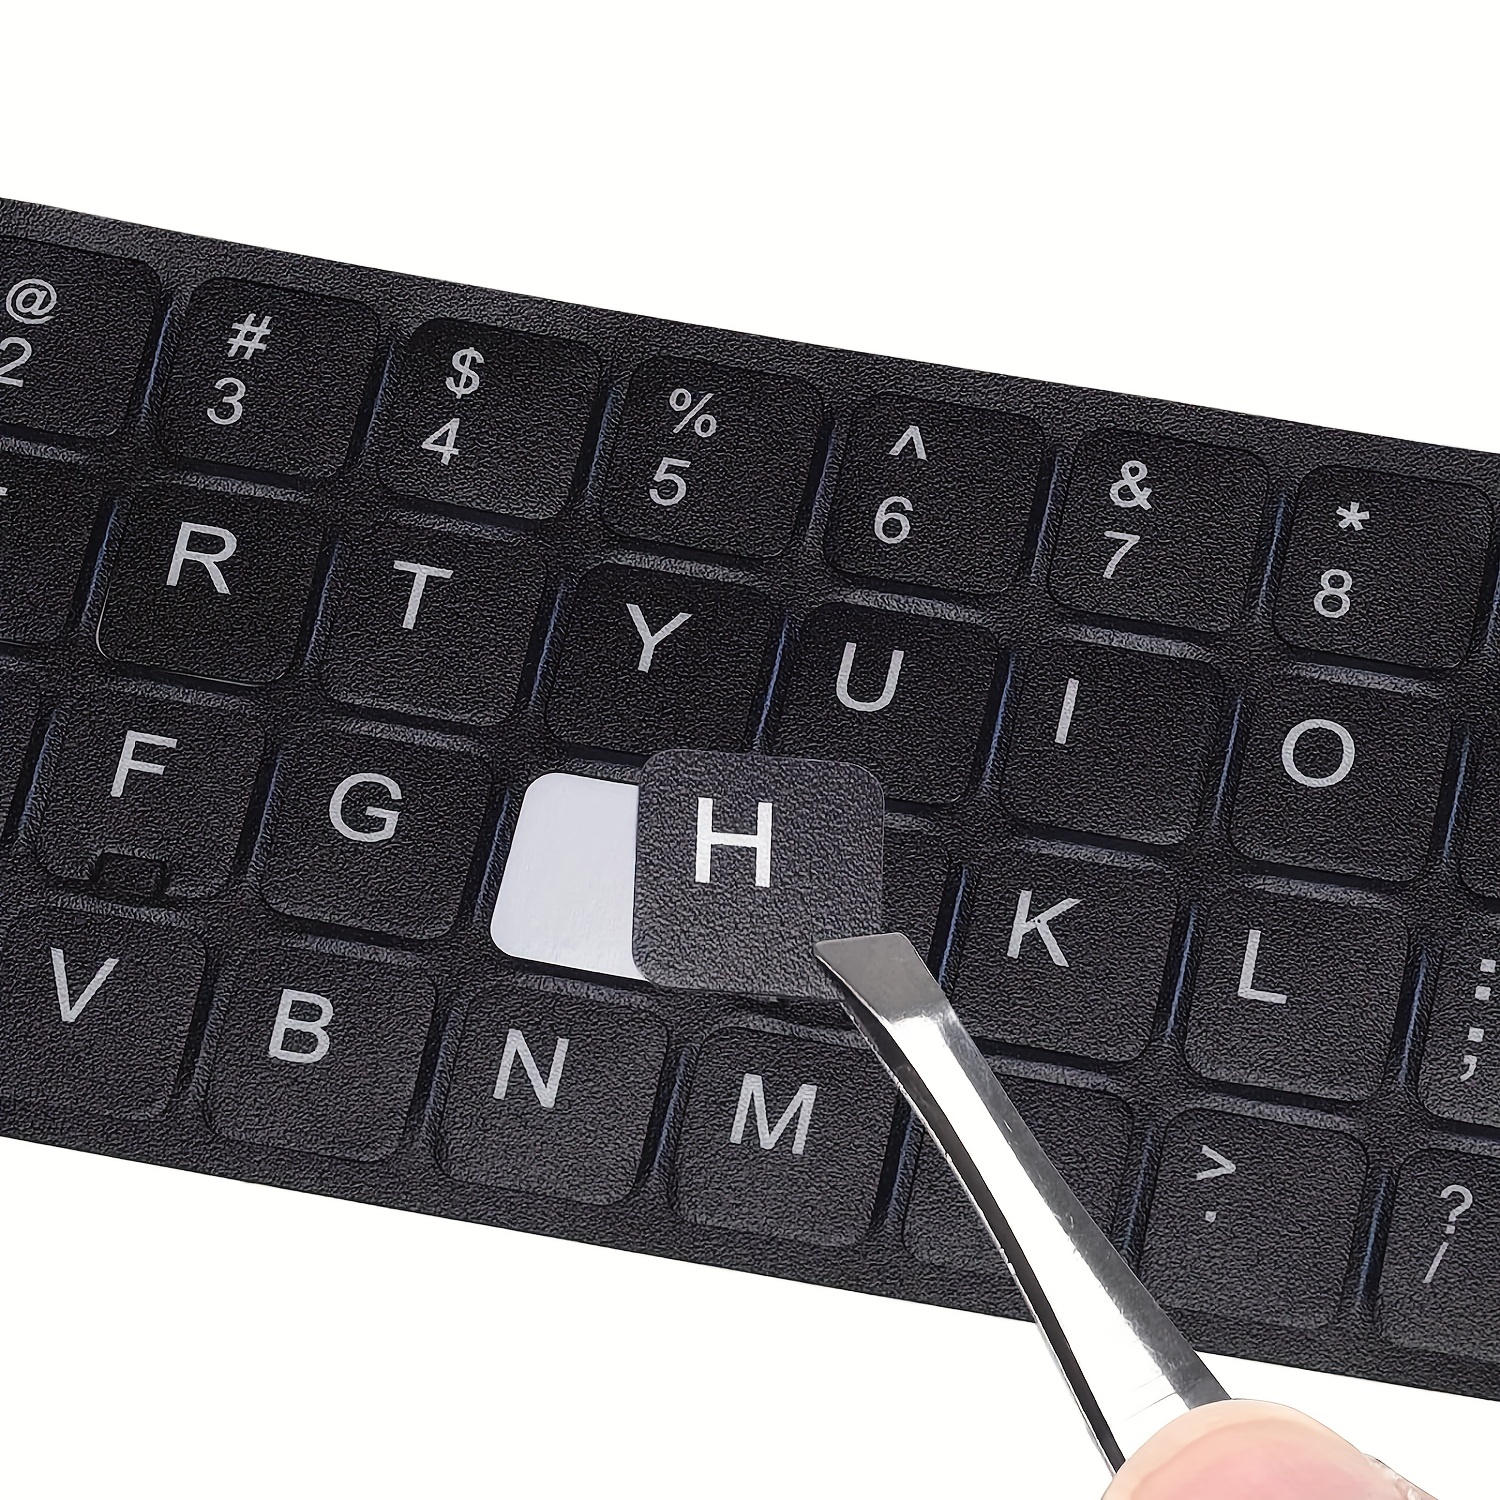 Pegatinas de teclado con 2PCS Pegatina de teclado universal Fondo morado  con letras blancas Letras de teclado Pegatinas de repuesto para computadora